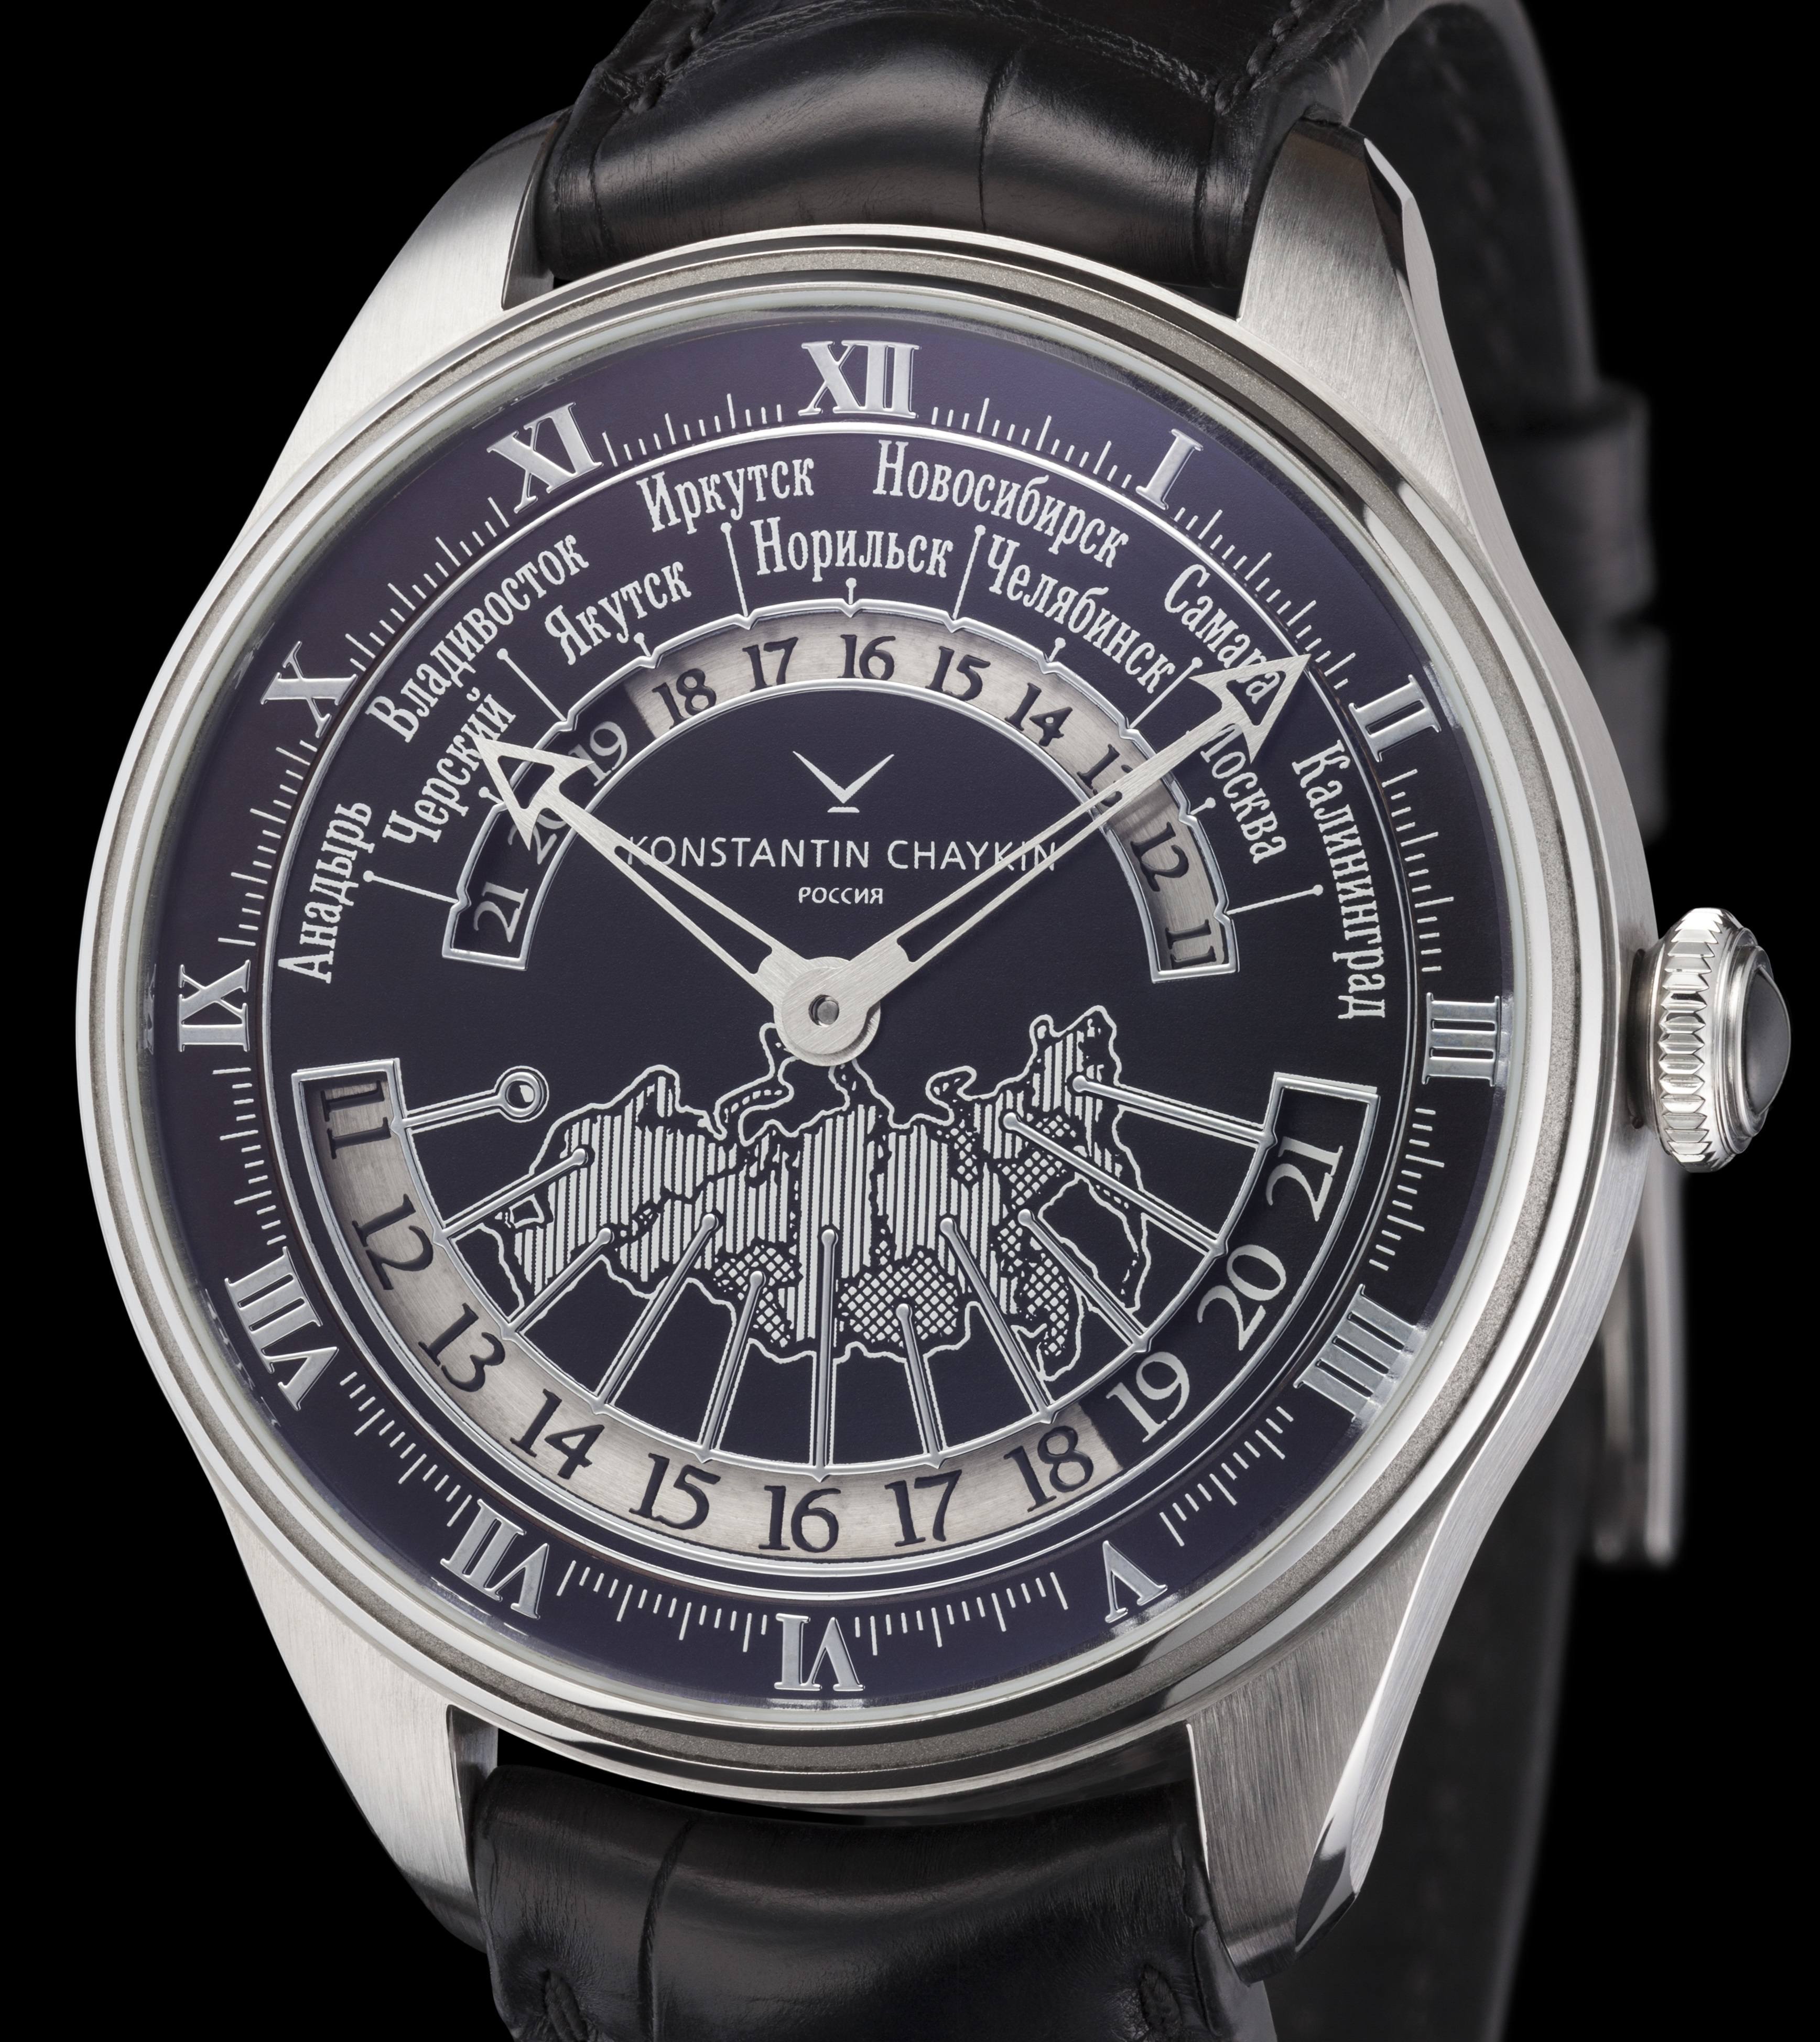 Konstantin Chaykin Russian Time Watch Watch Releases 